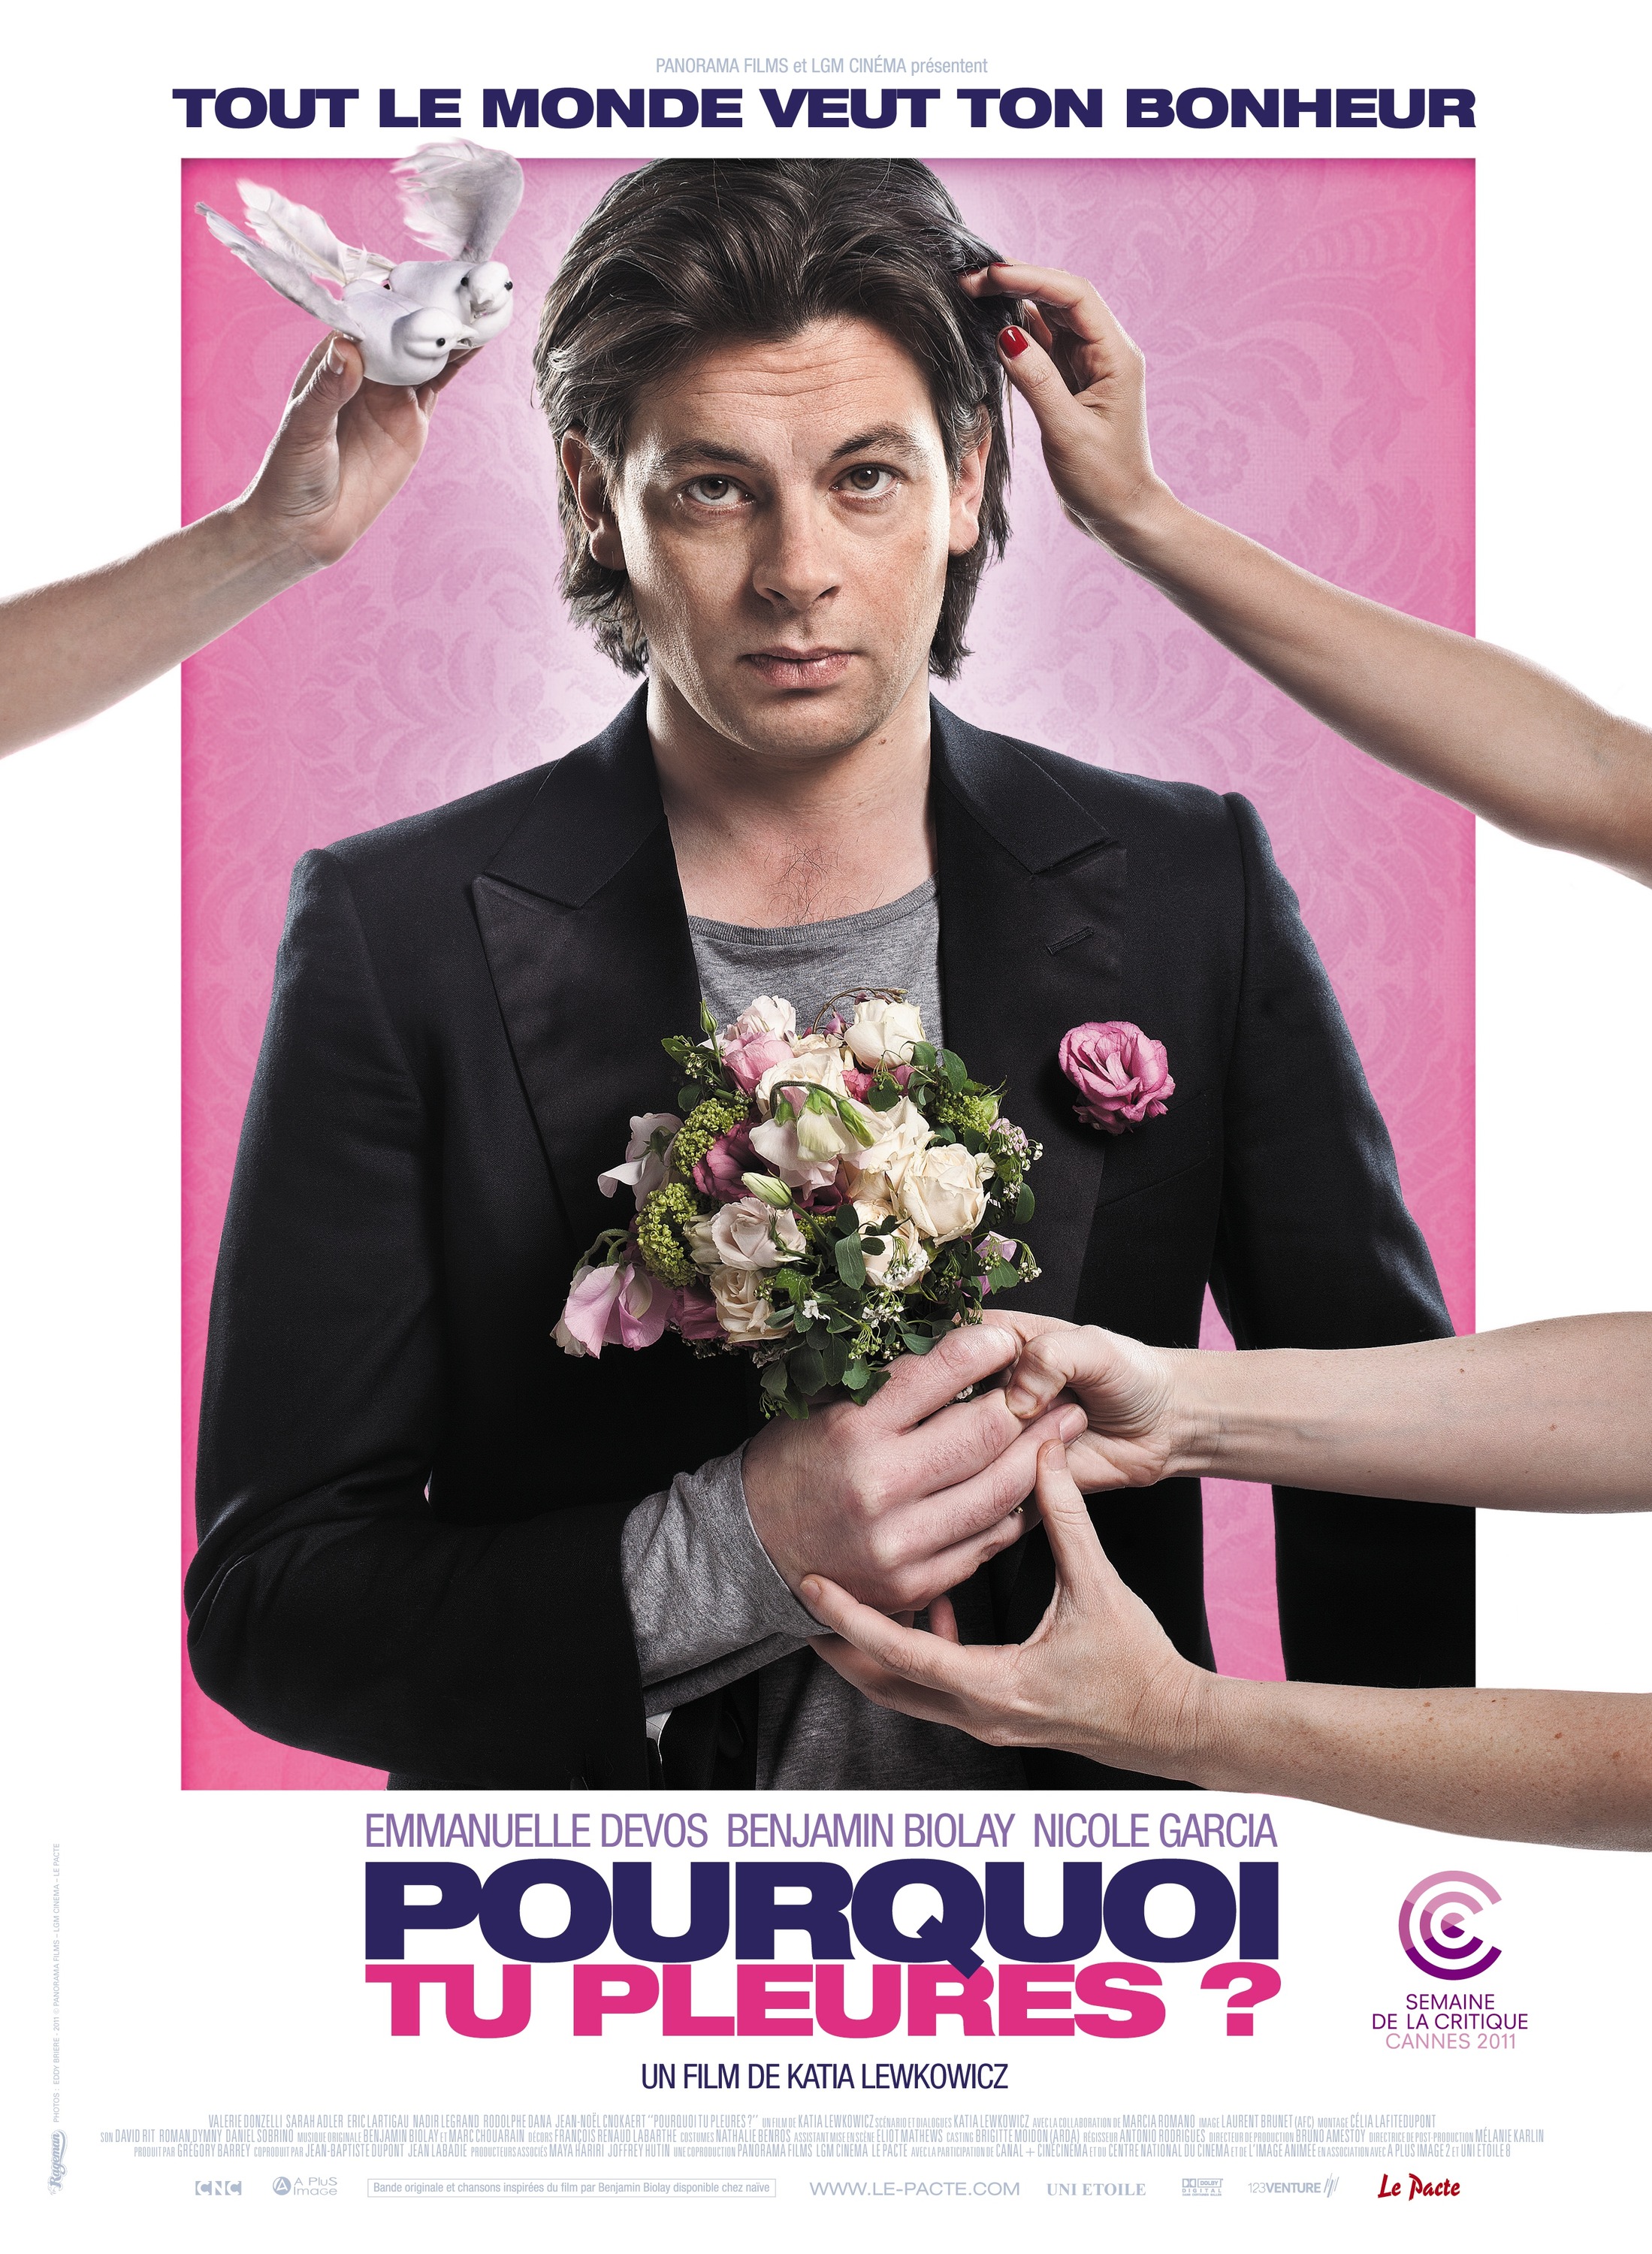 Mega Sized Movie Poster Image for Pourquoi tu pleures? 